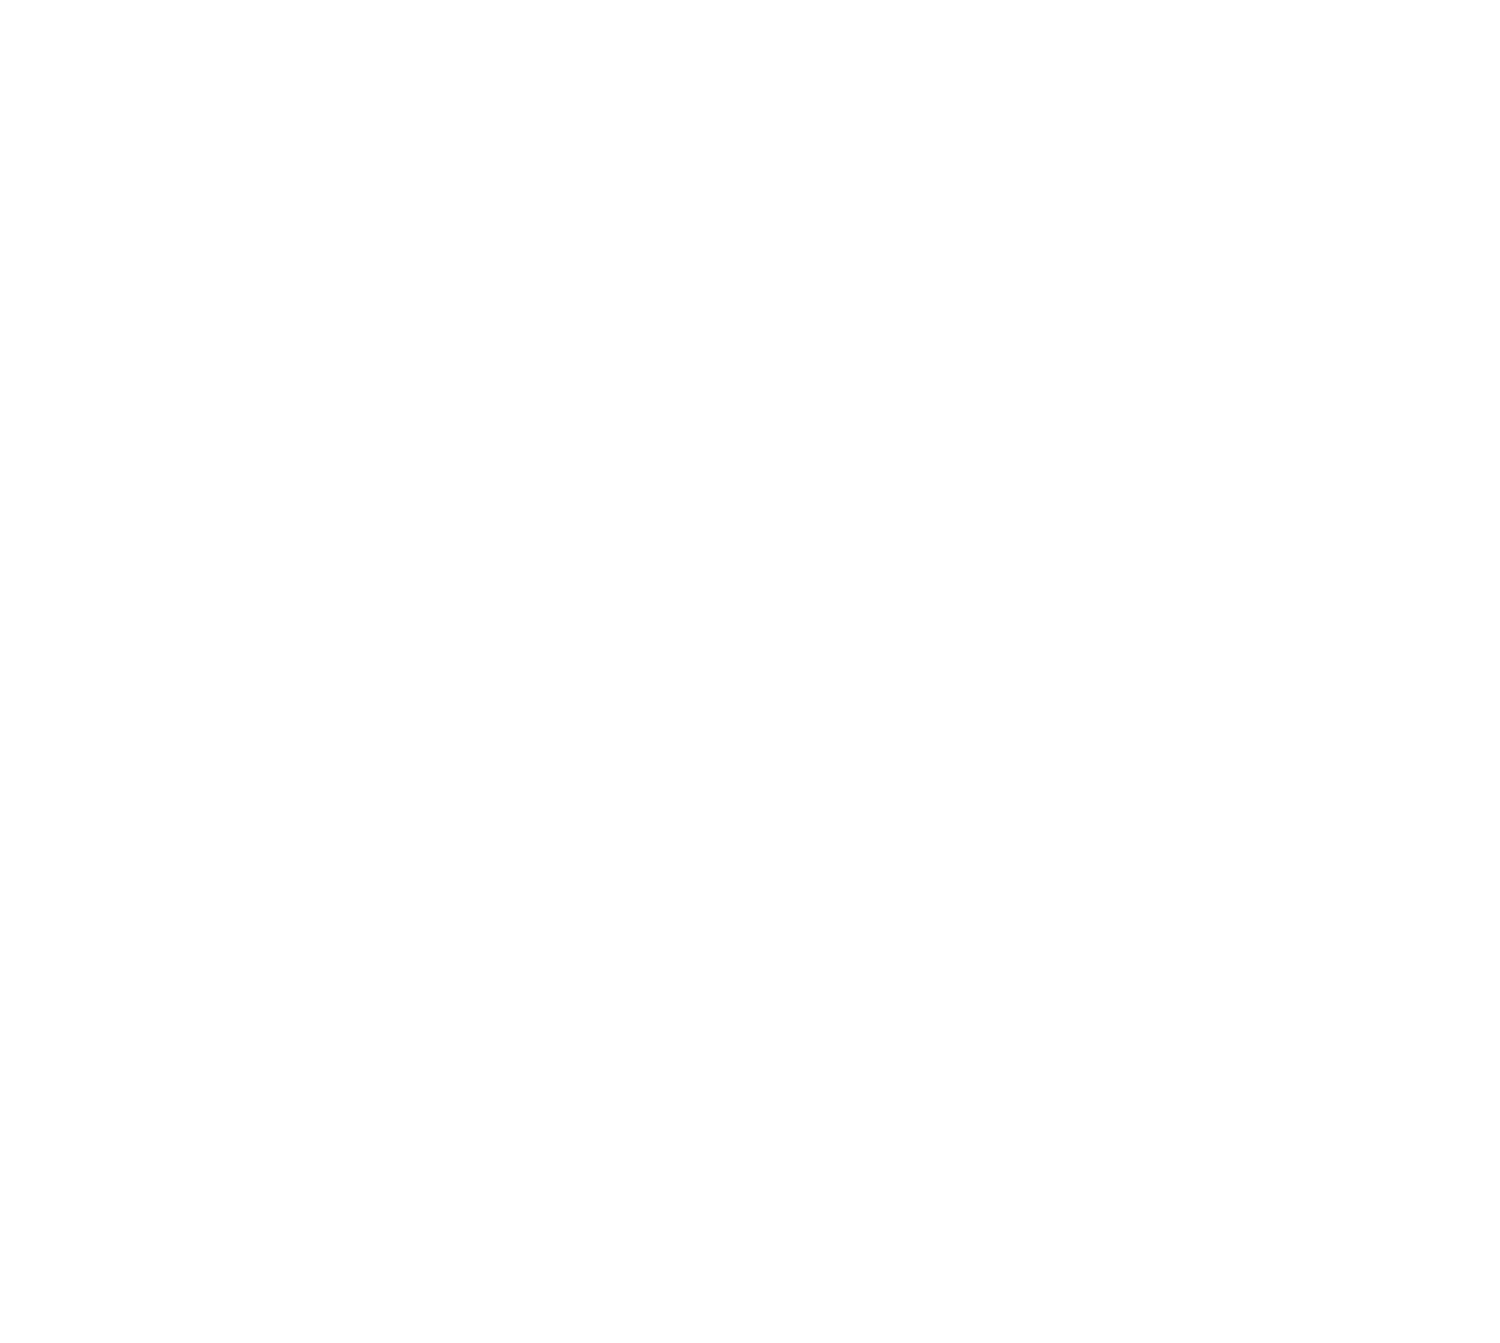 Appliance Repairs John Hull Electrics